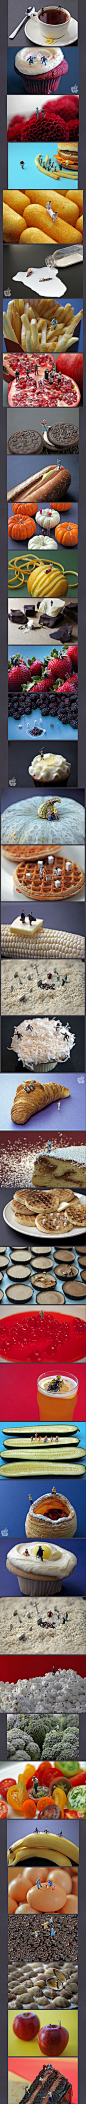 【微型小人的美食世界】美国摄影师Christopher Boffoli利用普通的食物和玩具小人模型，创造了一个个精彩的生活场景。 http://weibo.com/122756150